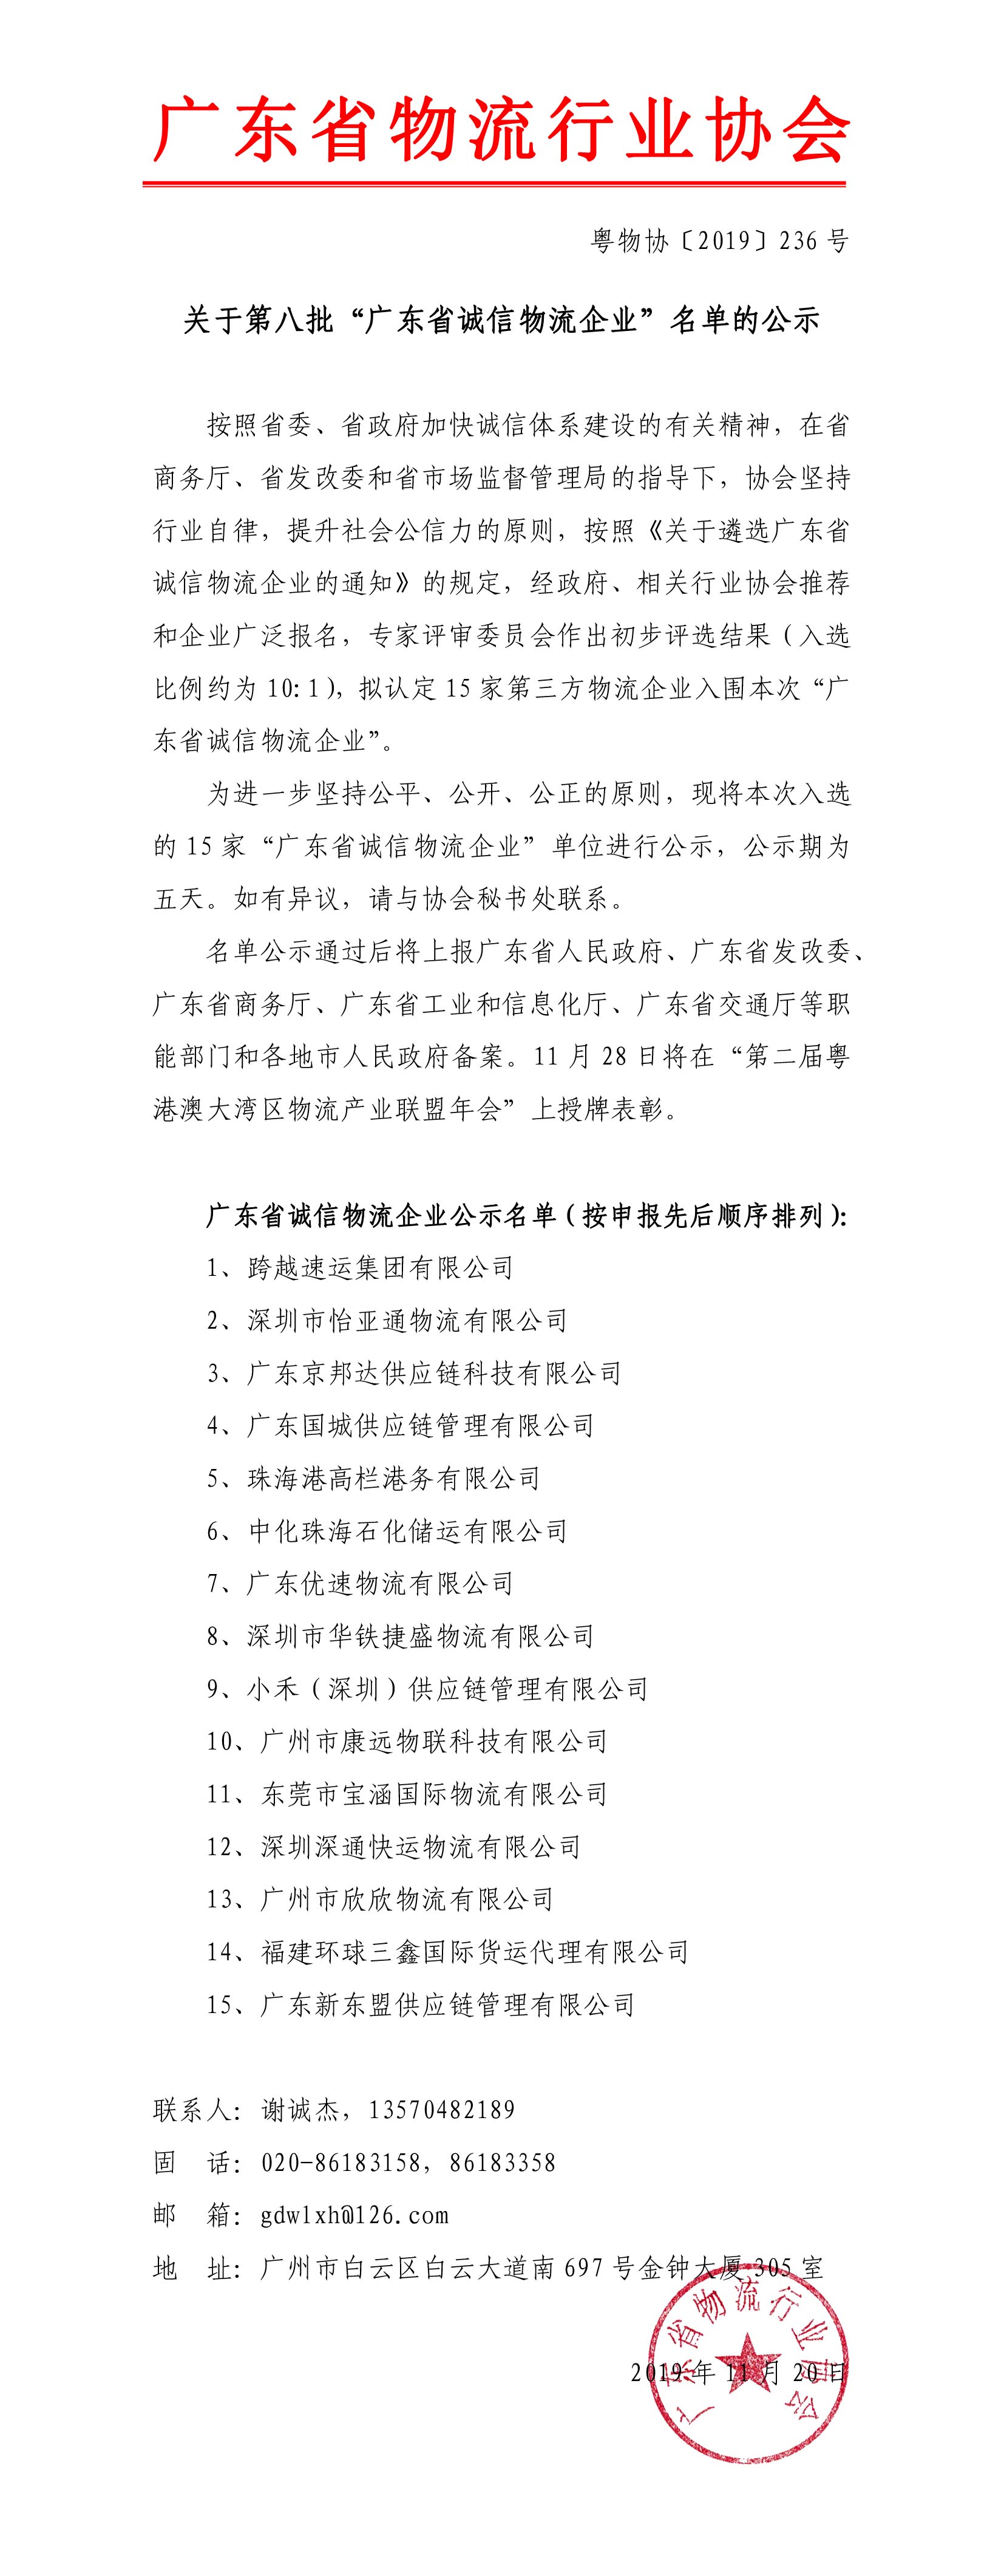 关于第八批“广东省诚信物流企业”名单的公示191120-1.jpg